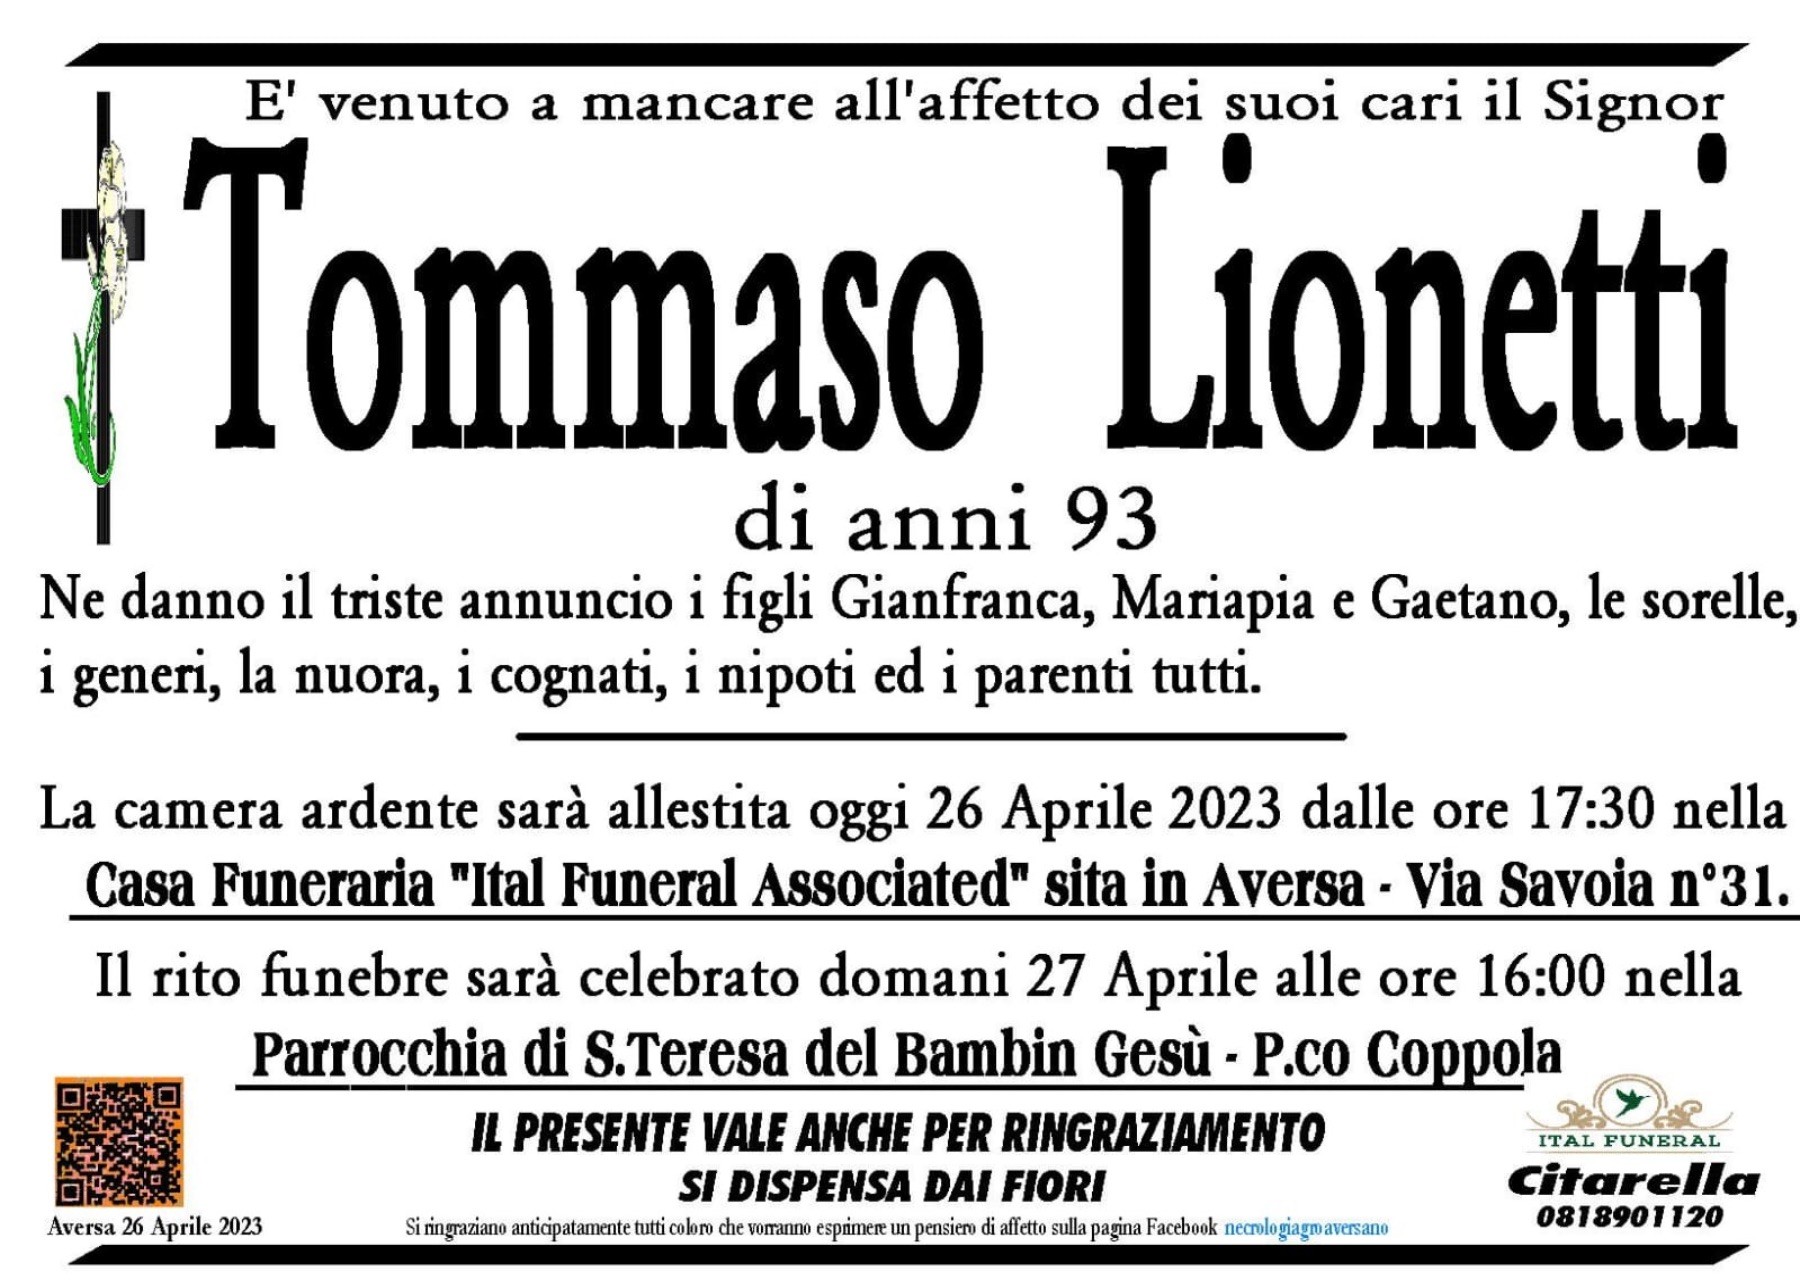 Tommaso Lionetti